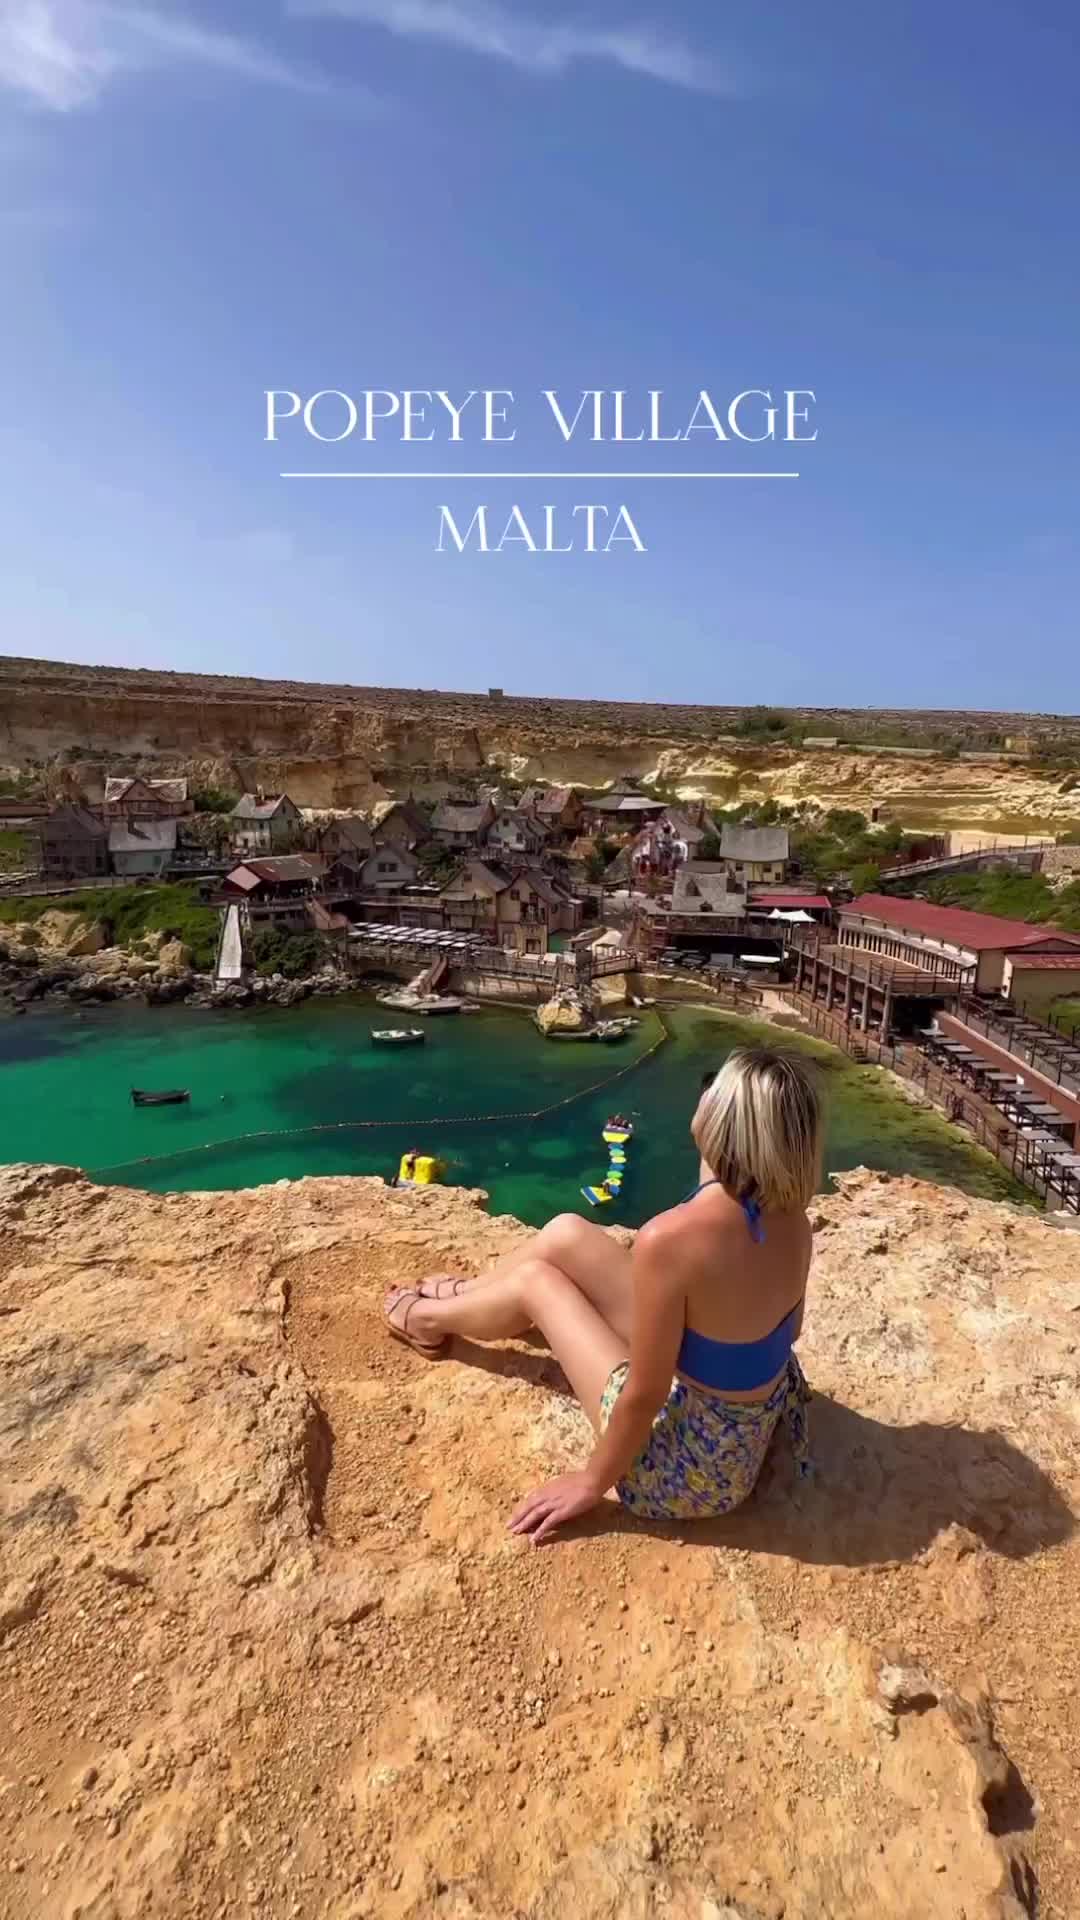 Unforgettable Malta Adventure: Explore Popeye Village